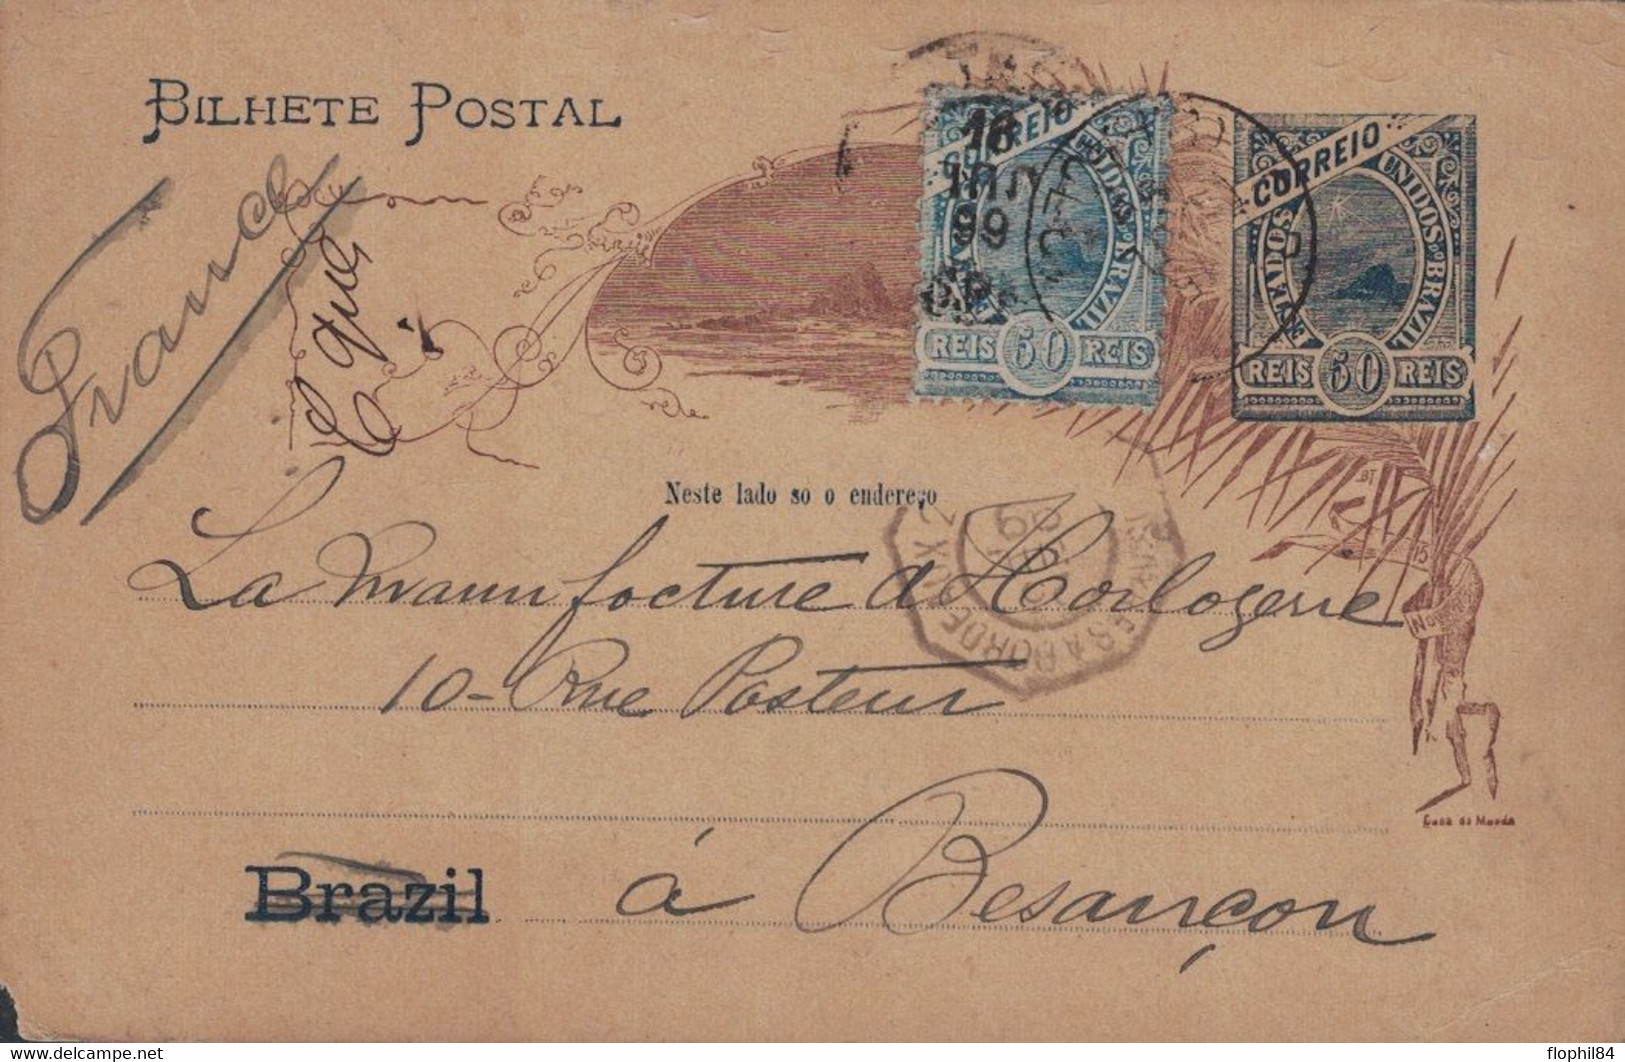 BRESIL - ENTIER POSTAL AVEC TIMBRE POUR BESANCON FRANCE - CACHET PAQUEBOT BUENOS-AYRES A BORDEAUX 20-7-1899 - Briefe U. Dokumente